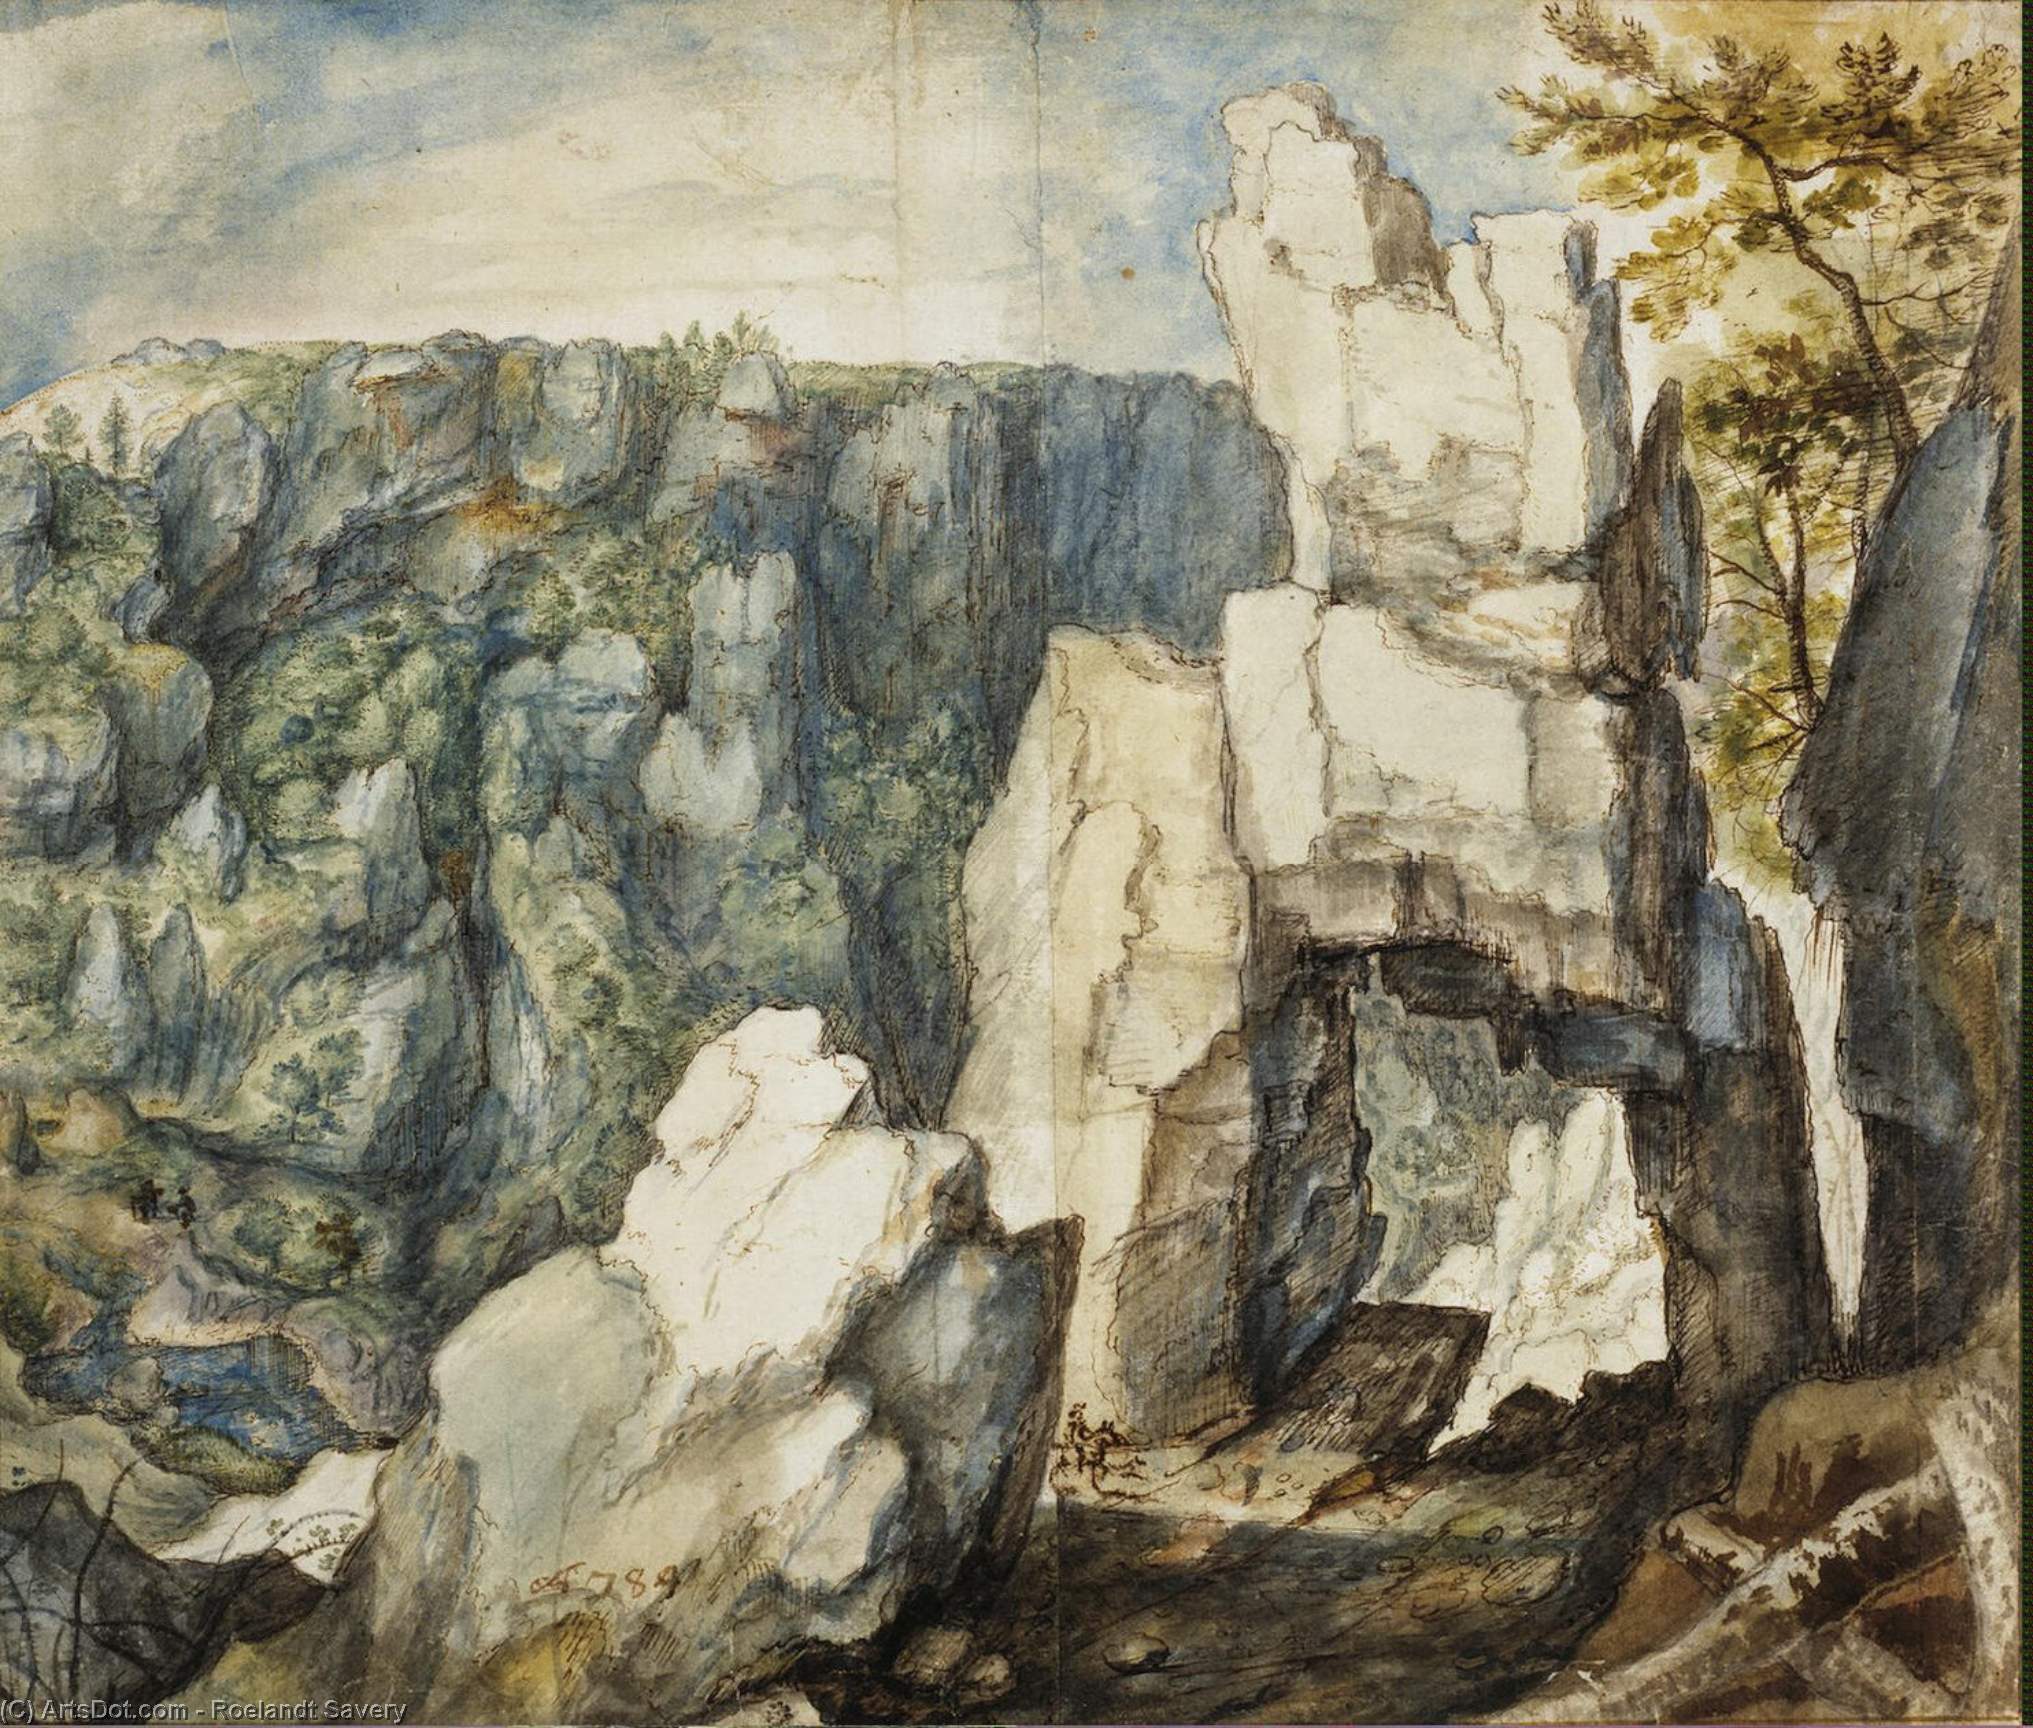 WikiOO.org - Encyclopedia of Fine Arts - Lukisan, Artwork Roelandt Savery - Rocky Landscape